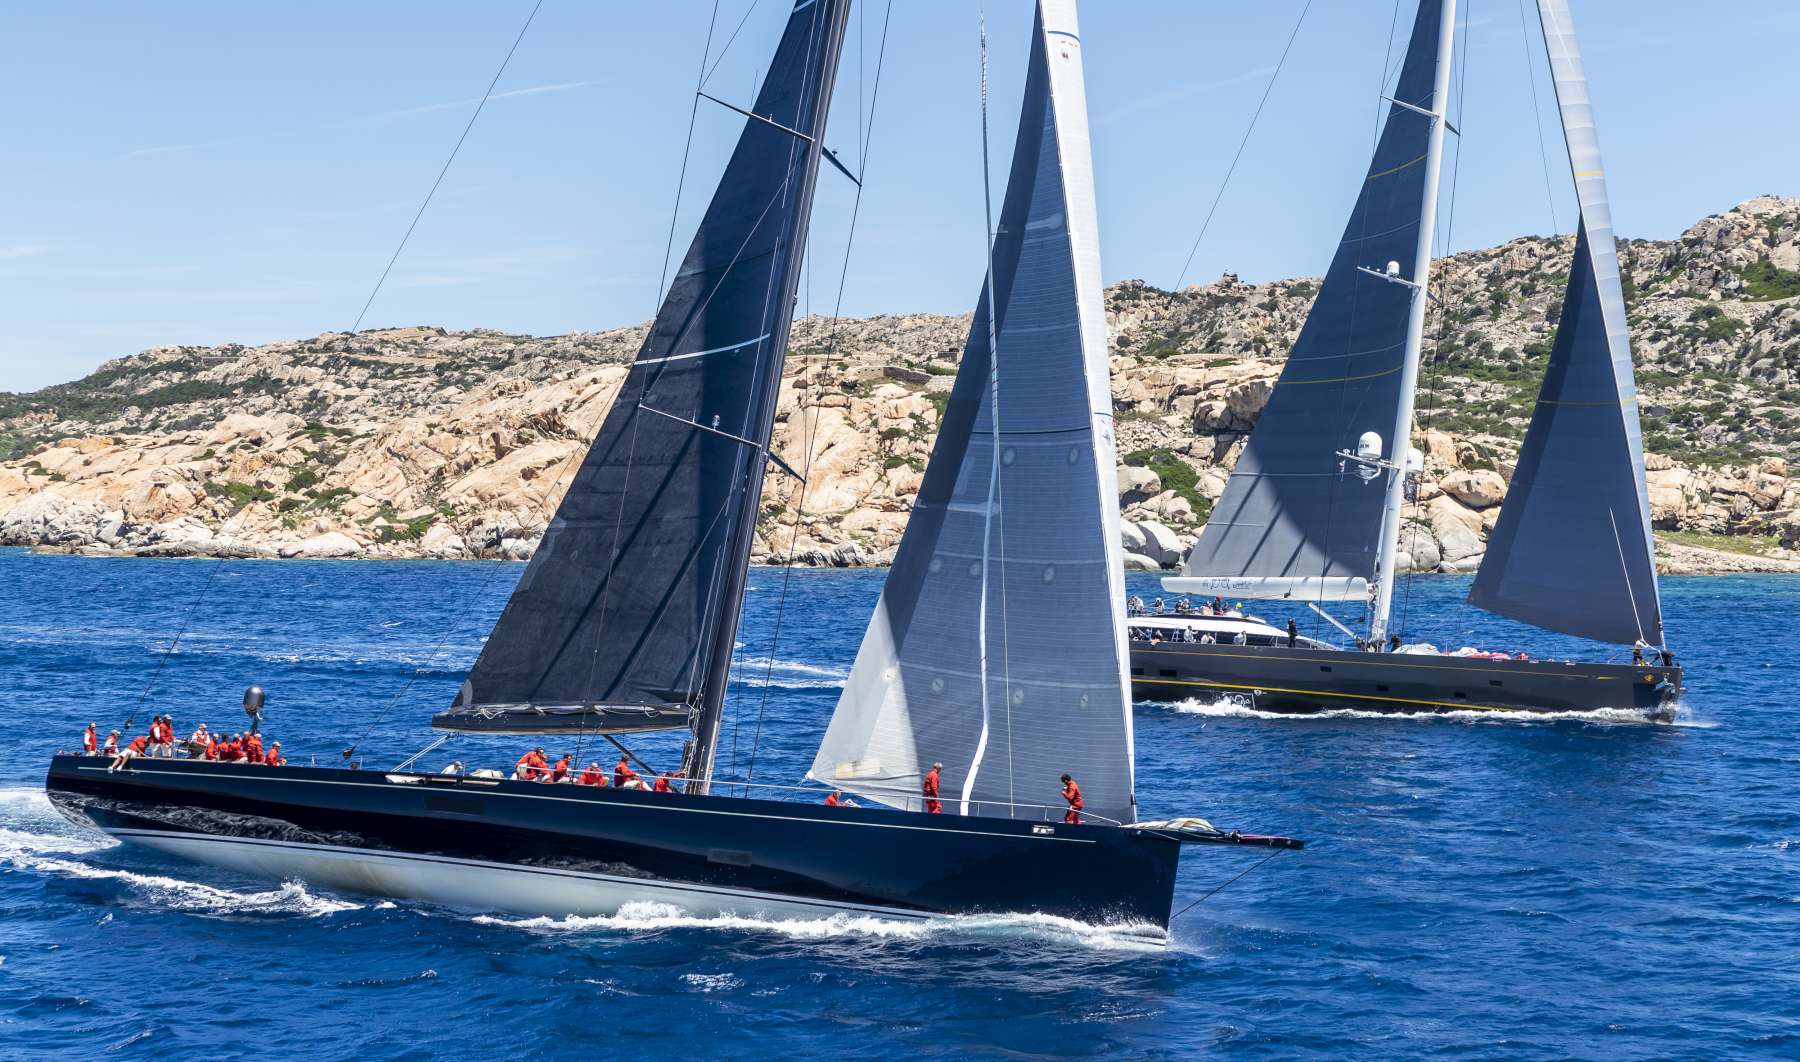 Pubblicato il bando per la Loro Piana Superyacht Regatta 2019 - NEWS - Yacht Club Costa Smeralda